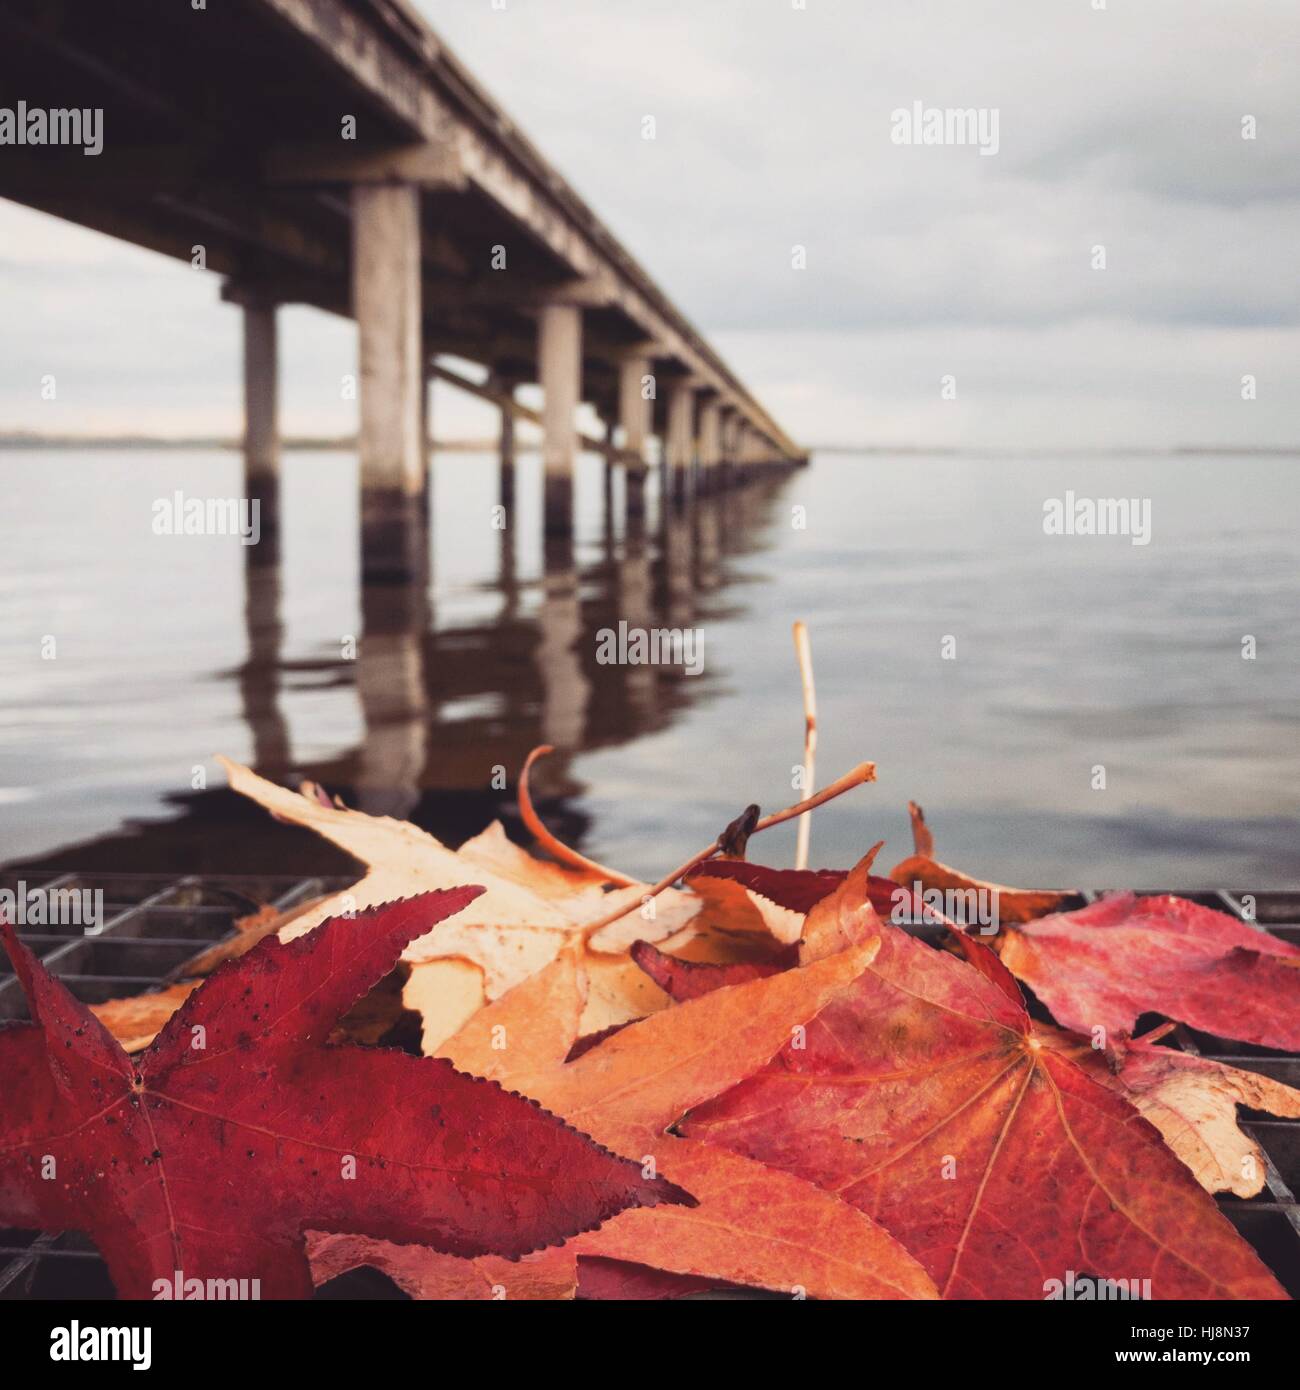 Foglie di autunno da un molo in legno, Huizen, Olanda Foto Stock